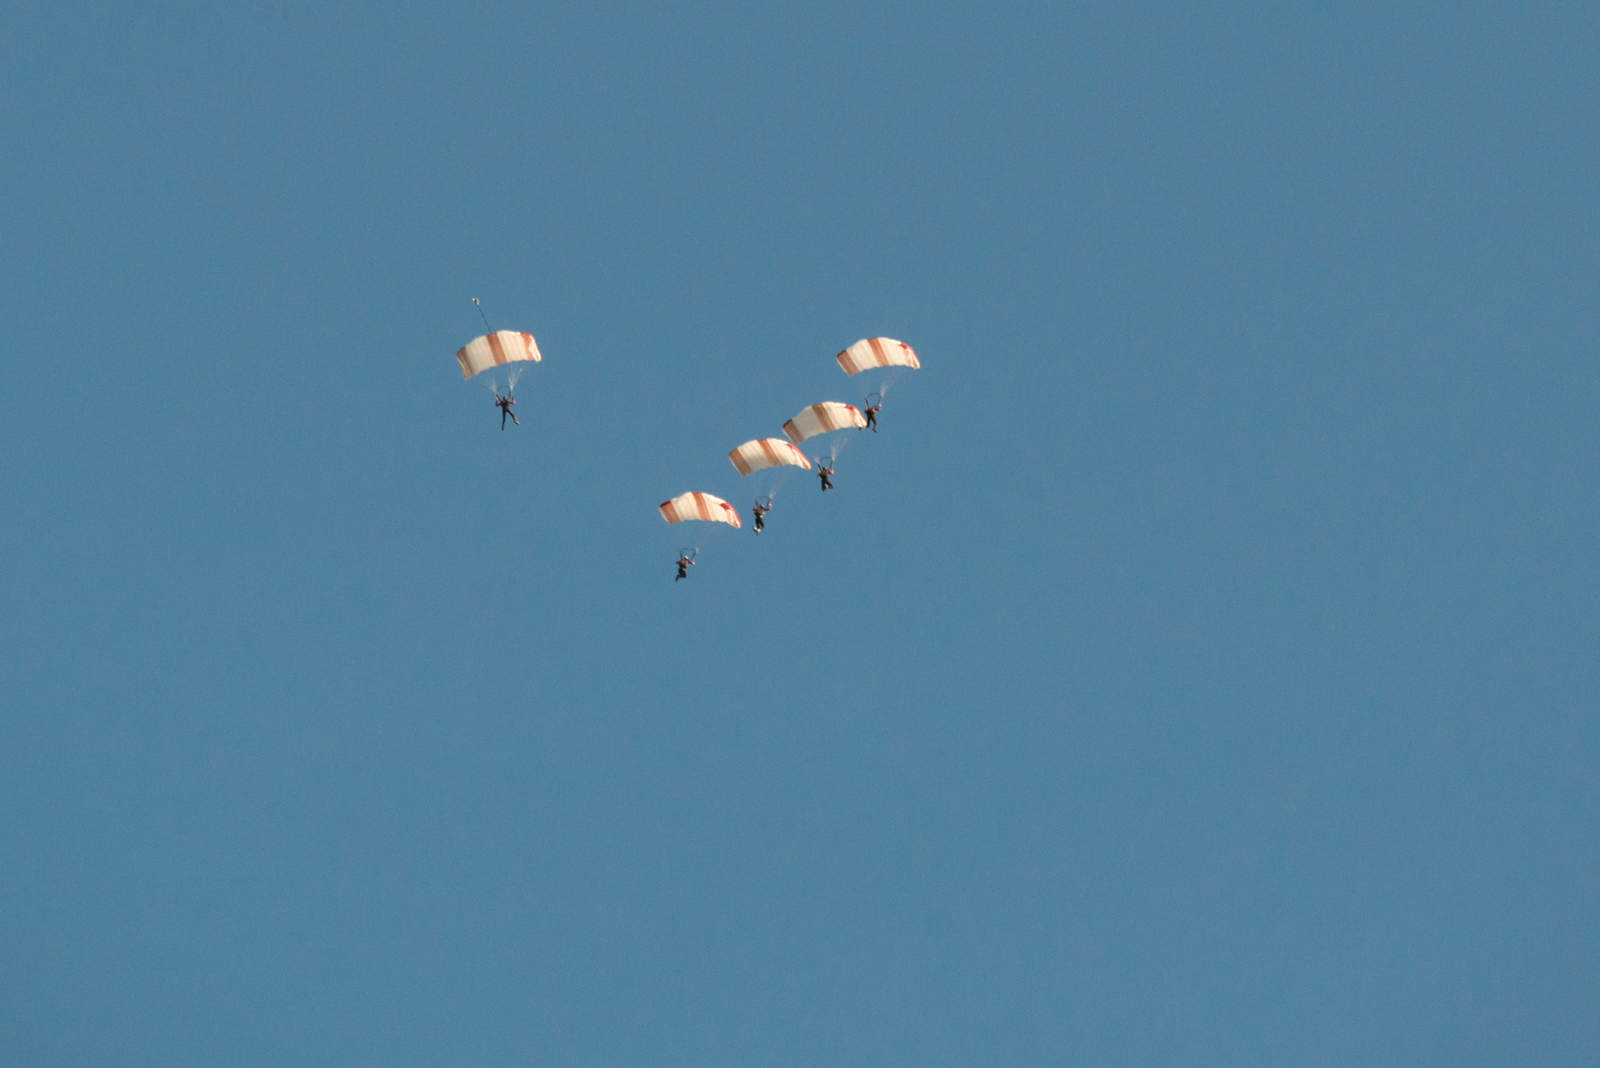 The Qatar National Parachute Team